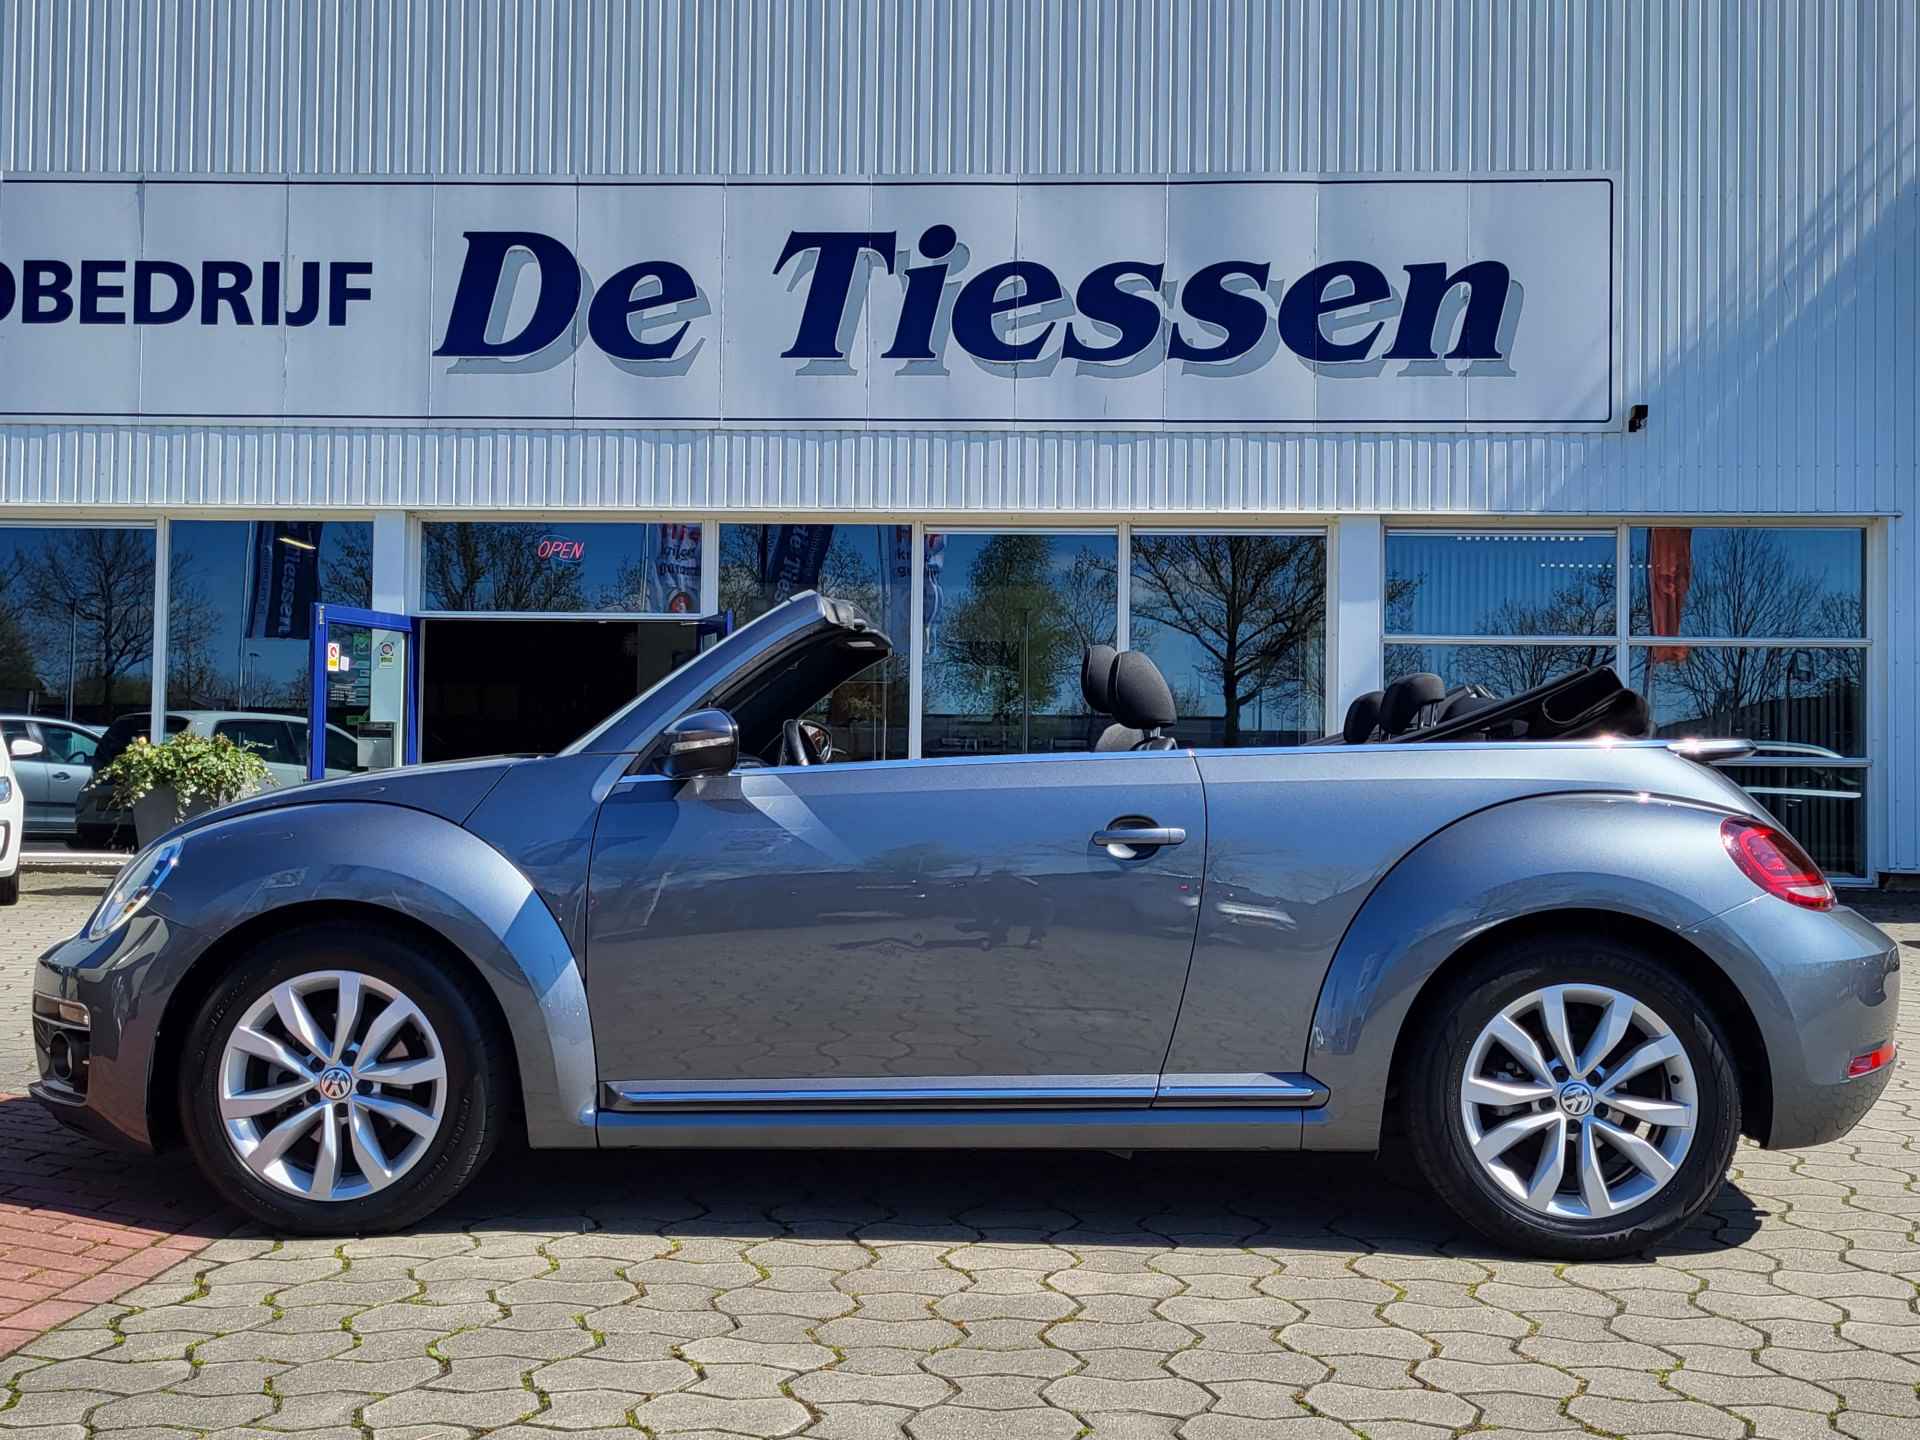 Volkswagen Beetle Cabriolet 1.2 TSI Exclusive Series, Rijklaar met beurt & garantie! - 3/27